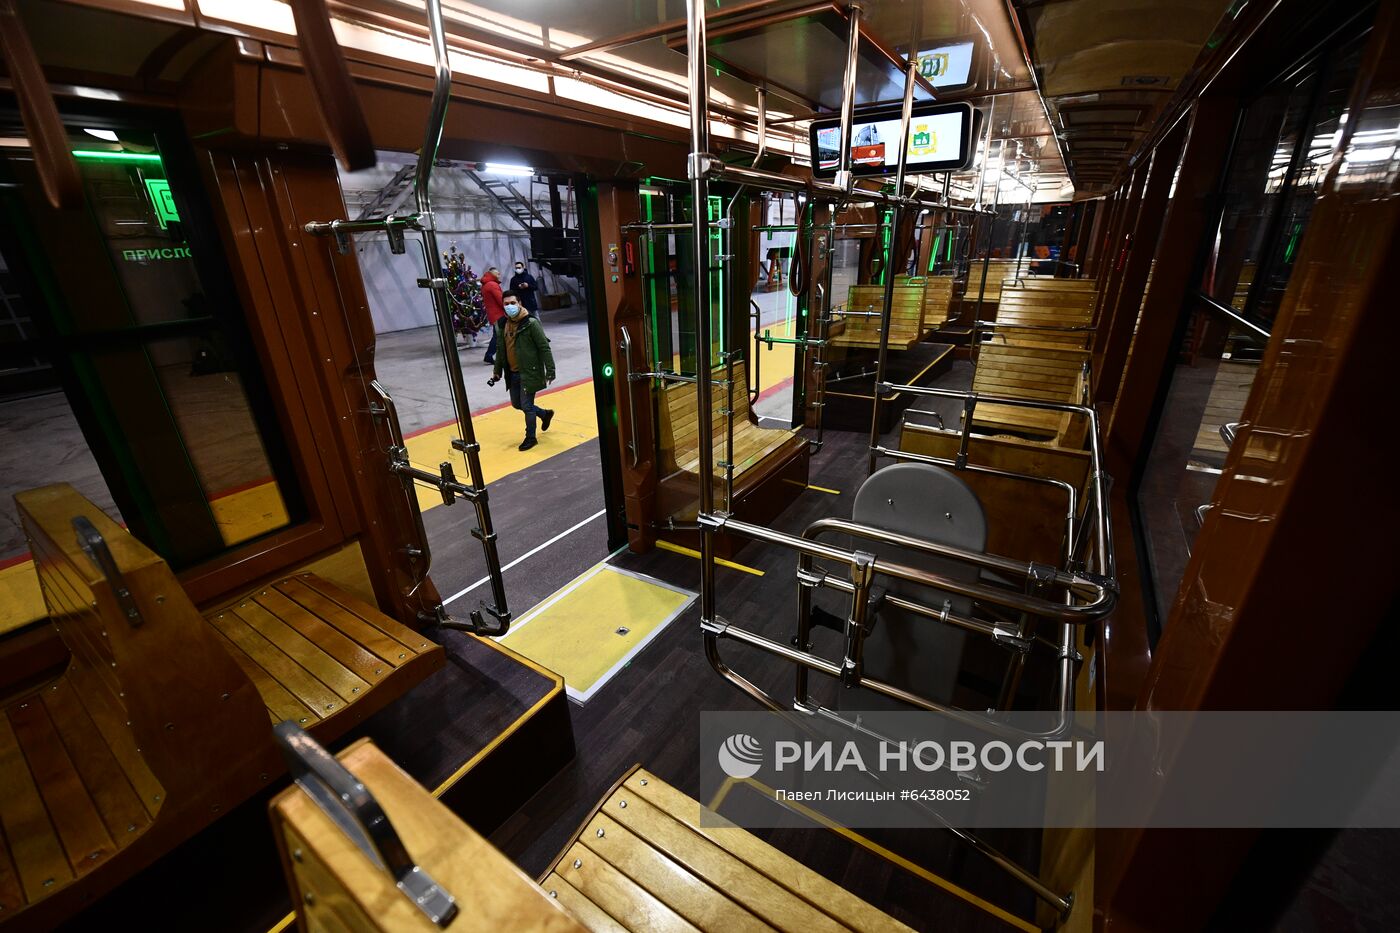 Презентация низкопольного трамвая в стиле ретро в Екатеринбурге 